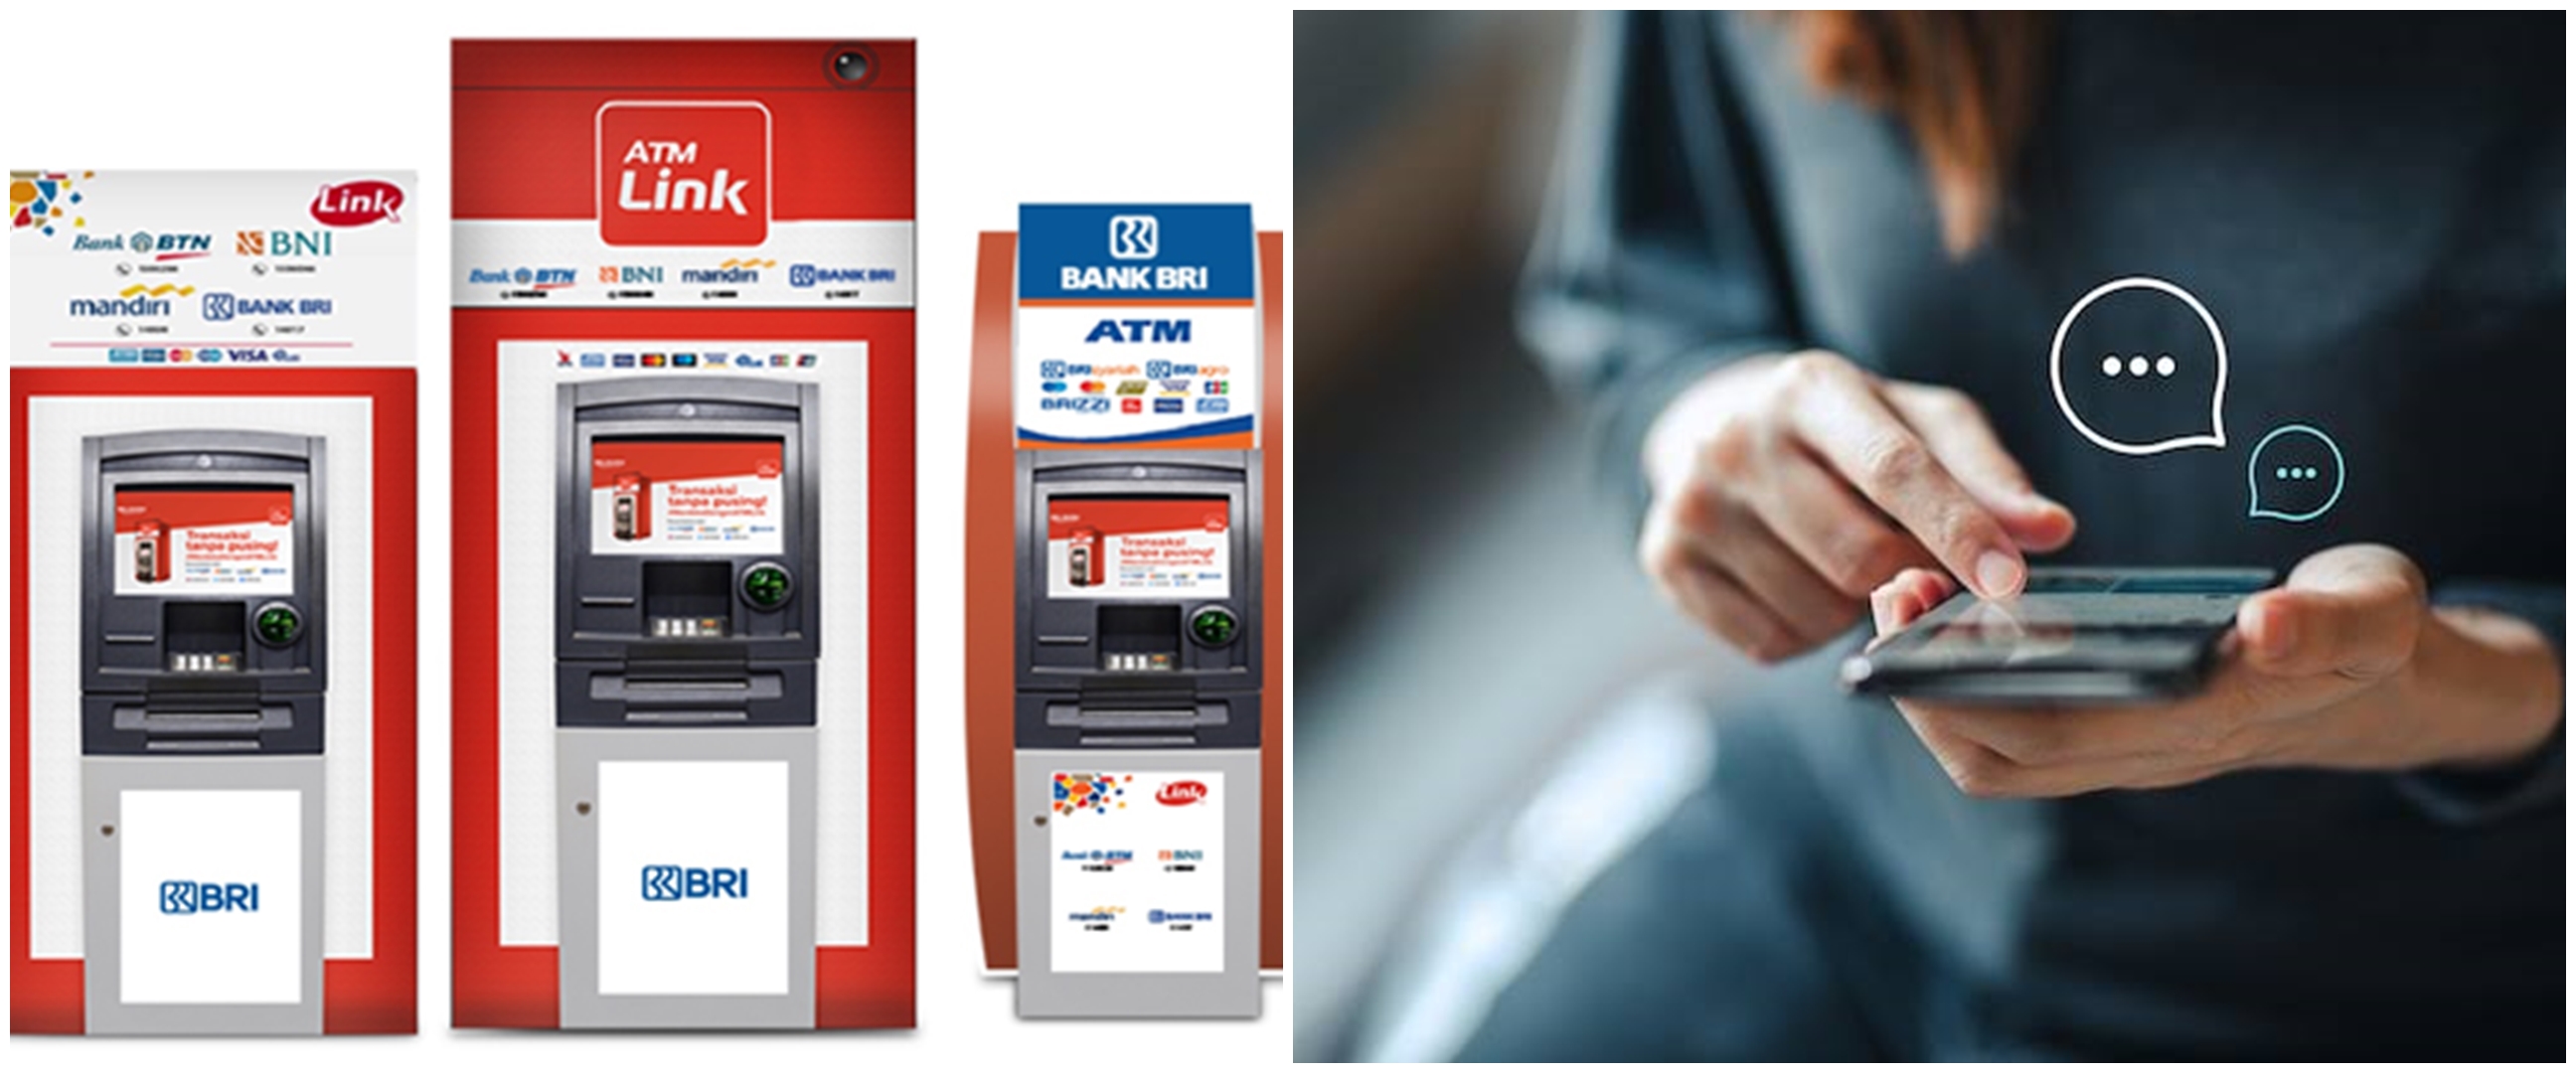 3 Cara buka blokir kartu ATM BRI tanpa ke bank, mudah dan antiribet